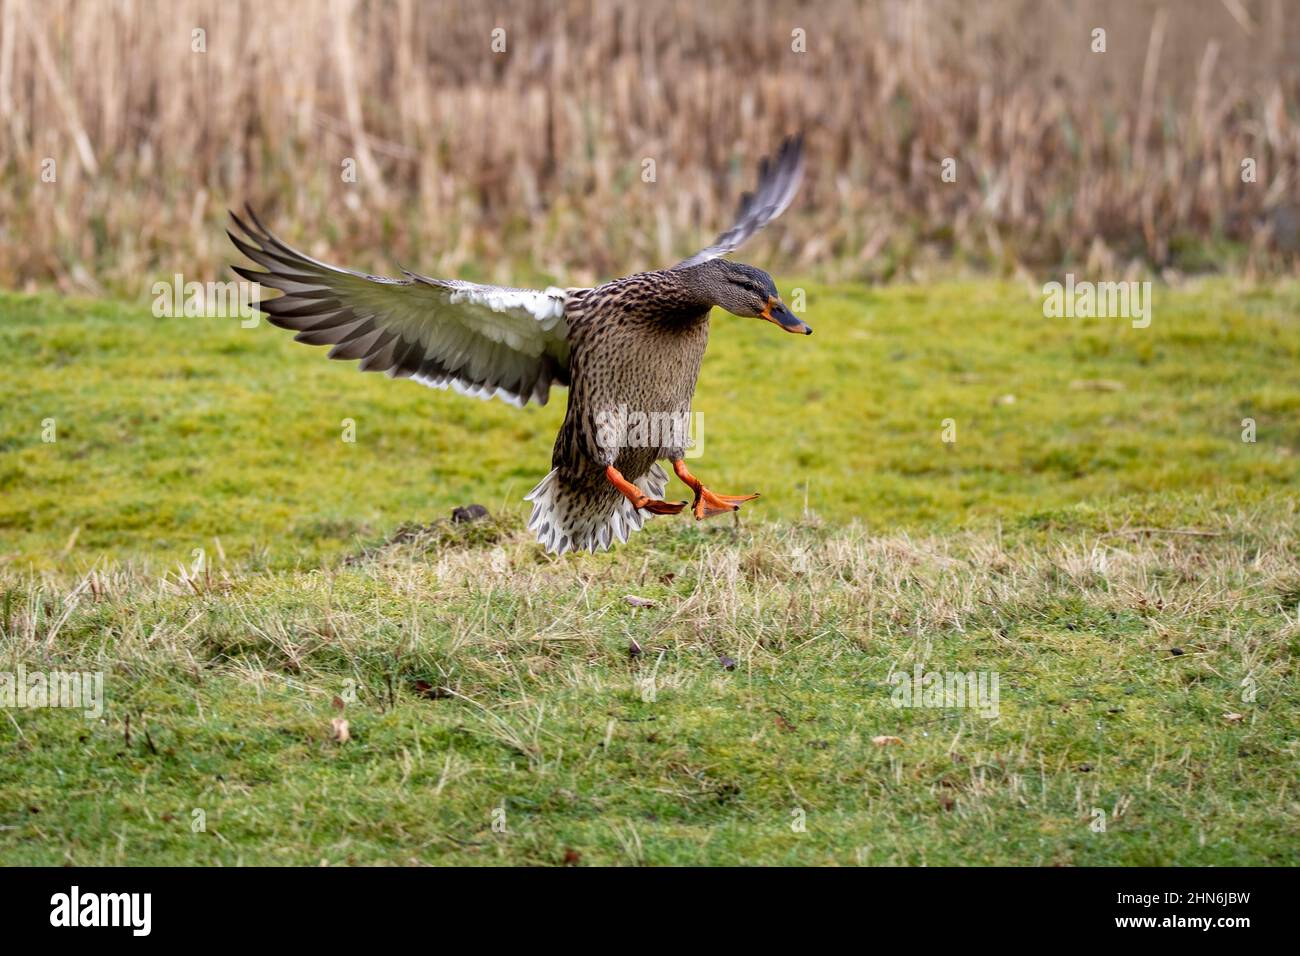 Una femmina Mallard con le sue ali allungate, atterrando sull'erba di un prato. Foto Stock